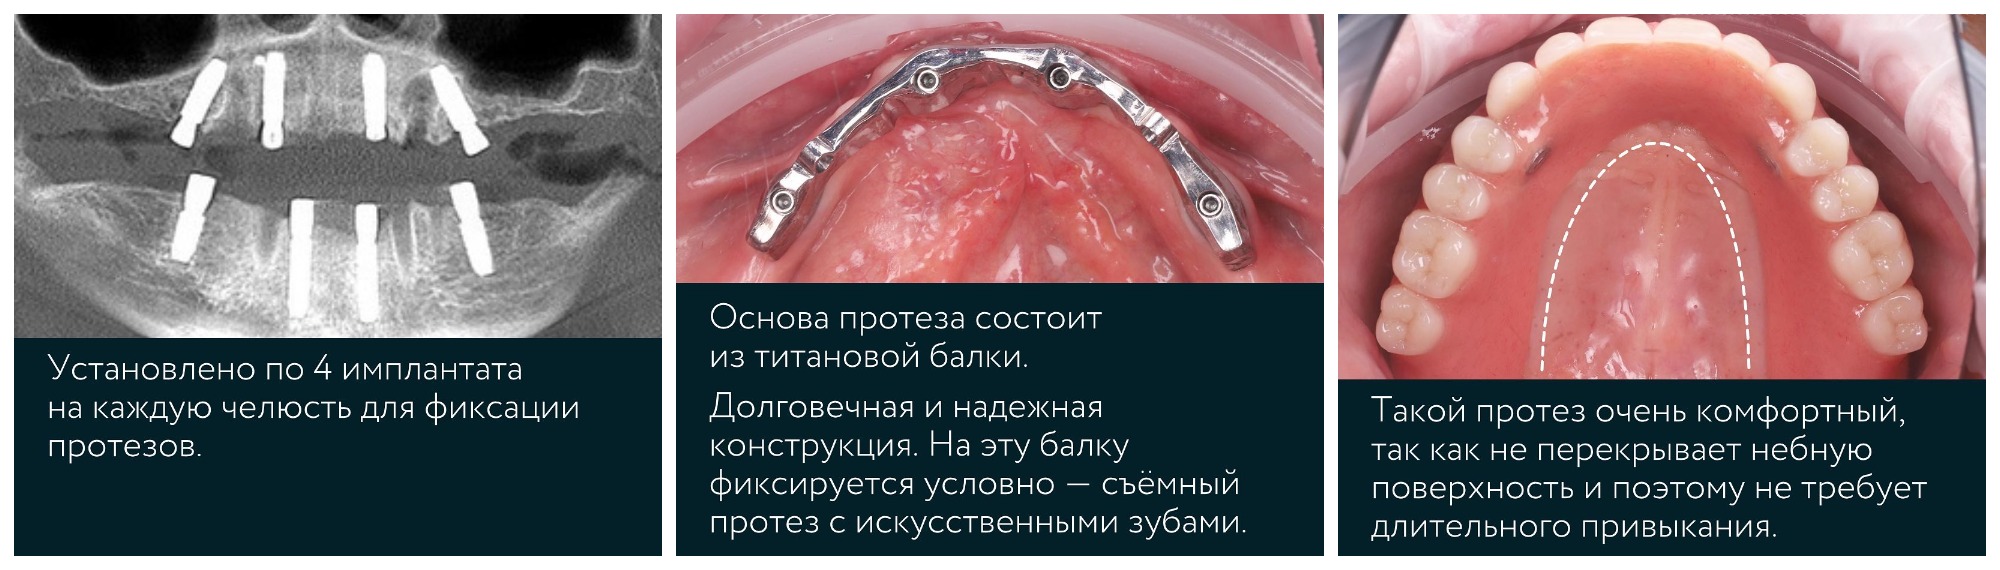 Виды протезирования зубов и зубных протезов